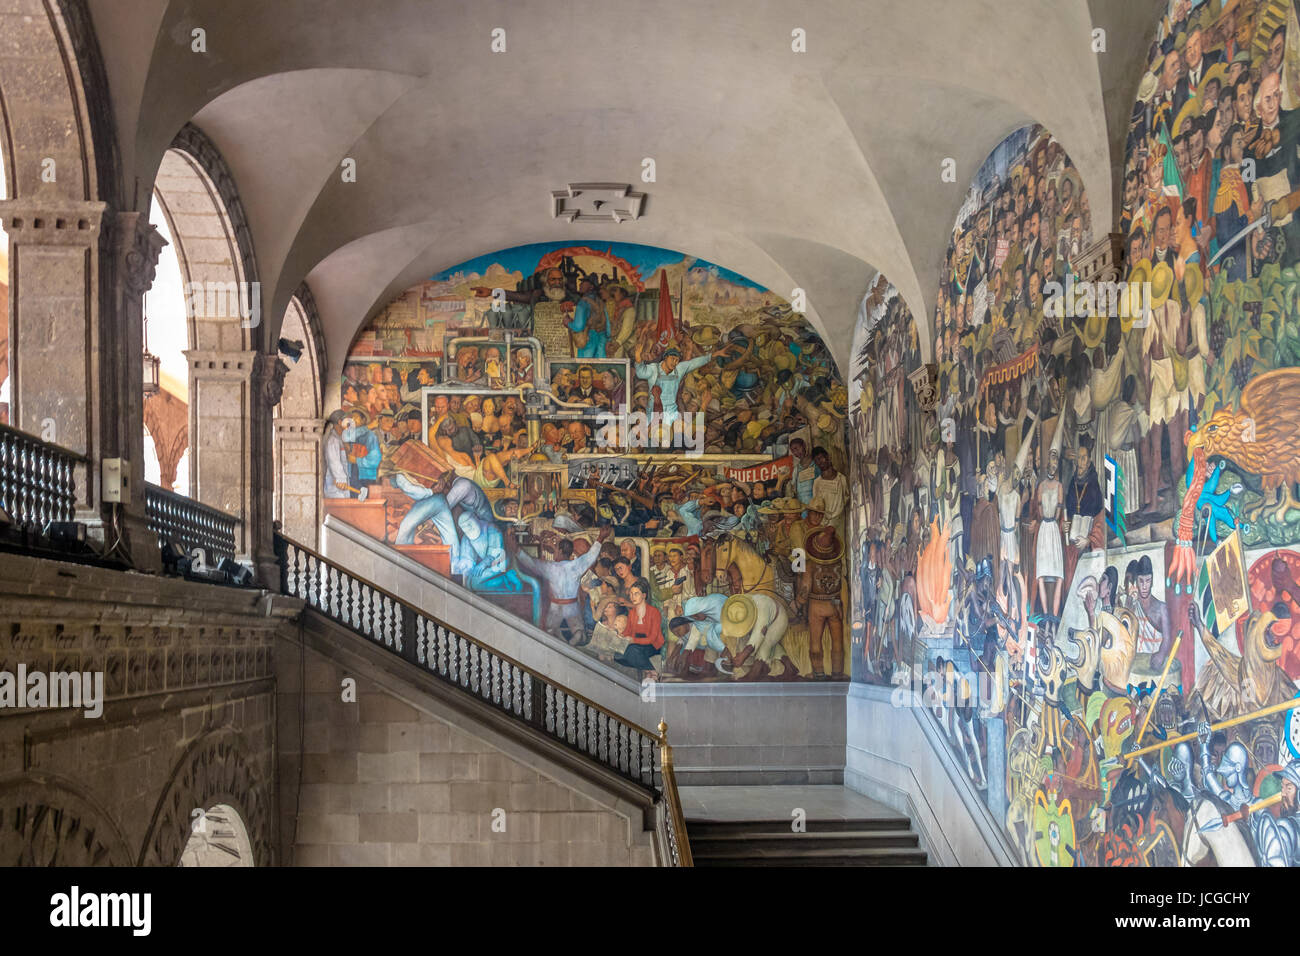 Die Treppe der Nationalpalast mit dem berühmten Wandgemälde "Klassenkampf" und "Geschichte Mexikos" von Diego Rivera - Mexiko-Stadt, Mexiko Stockfoto